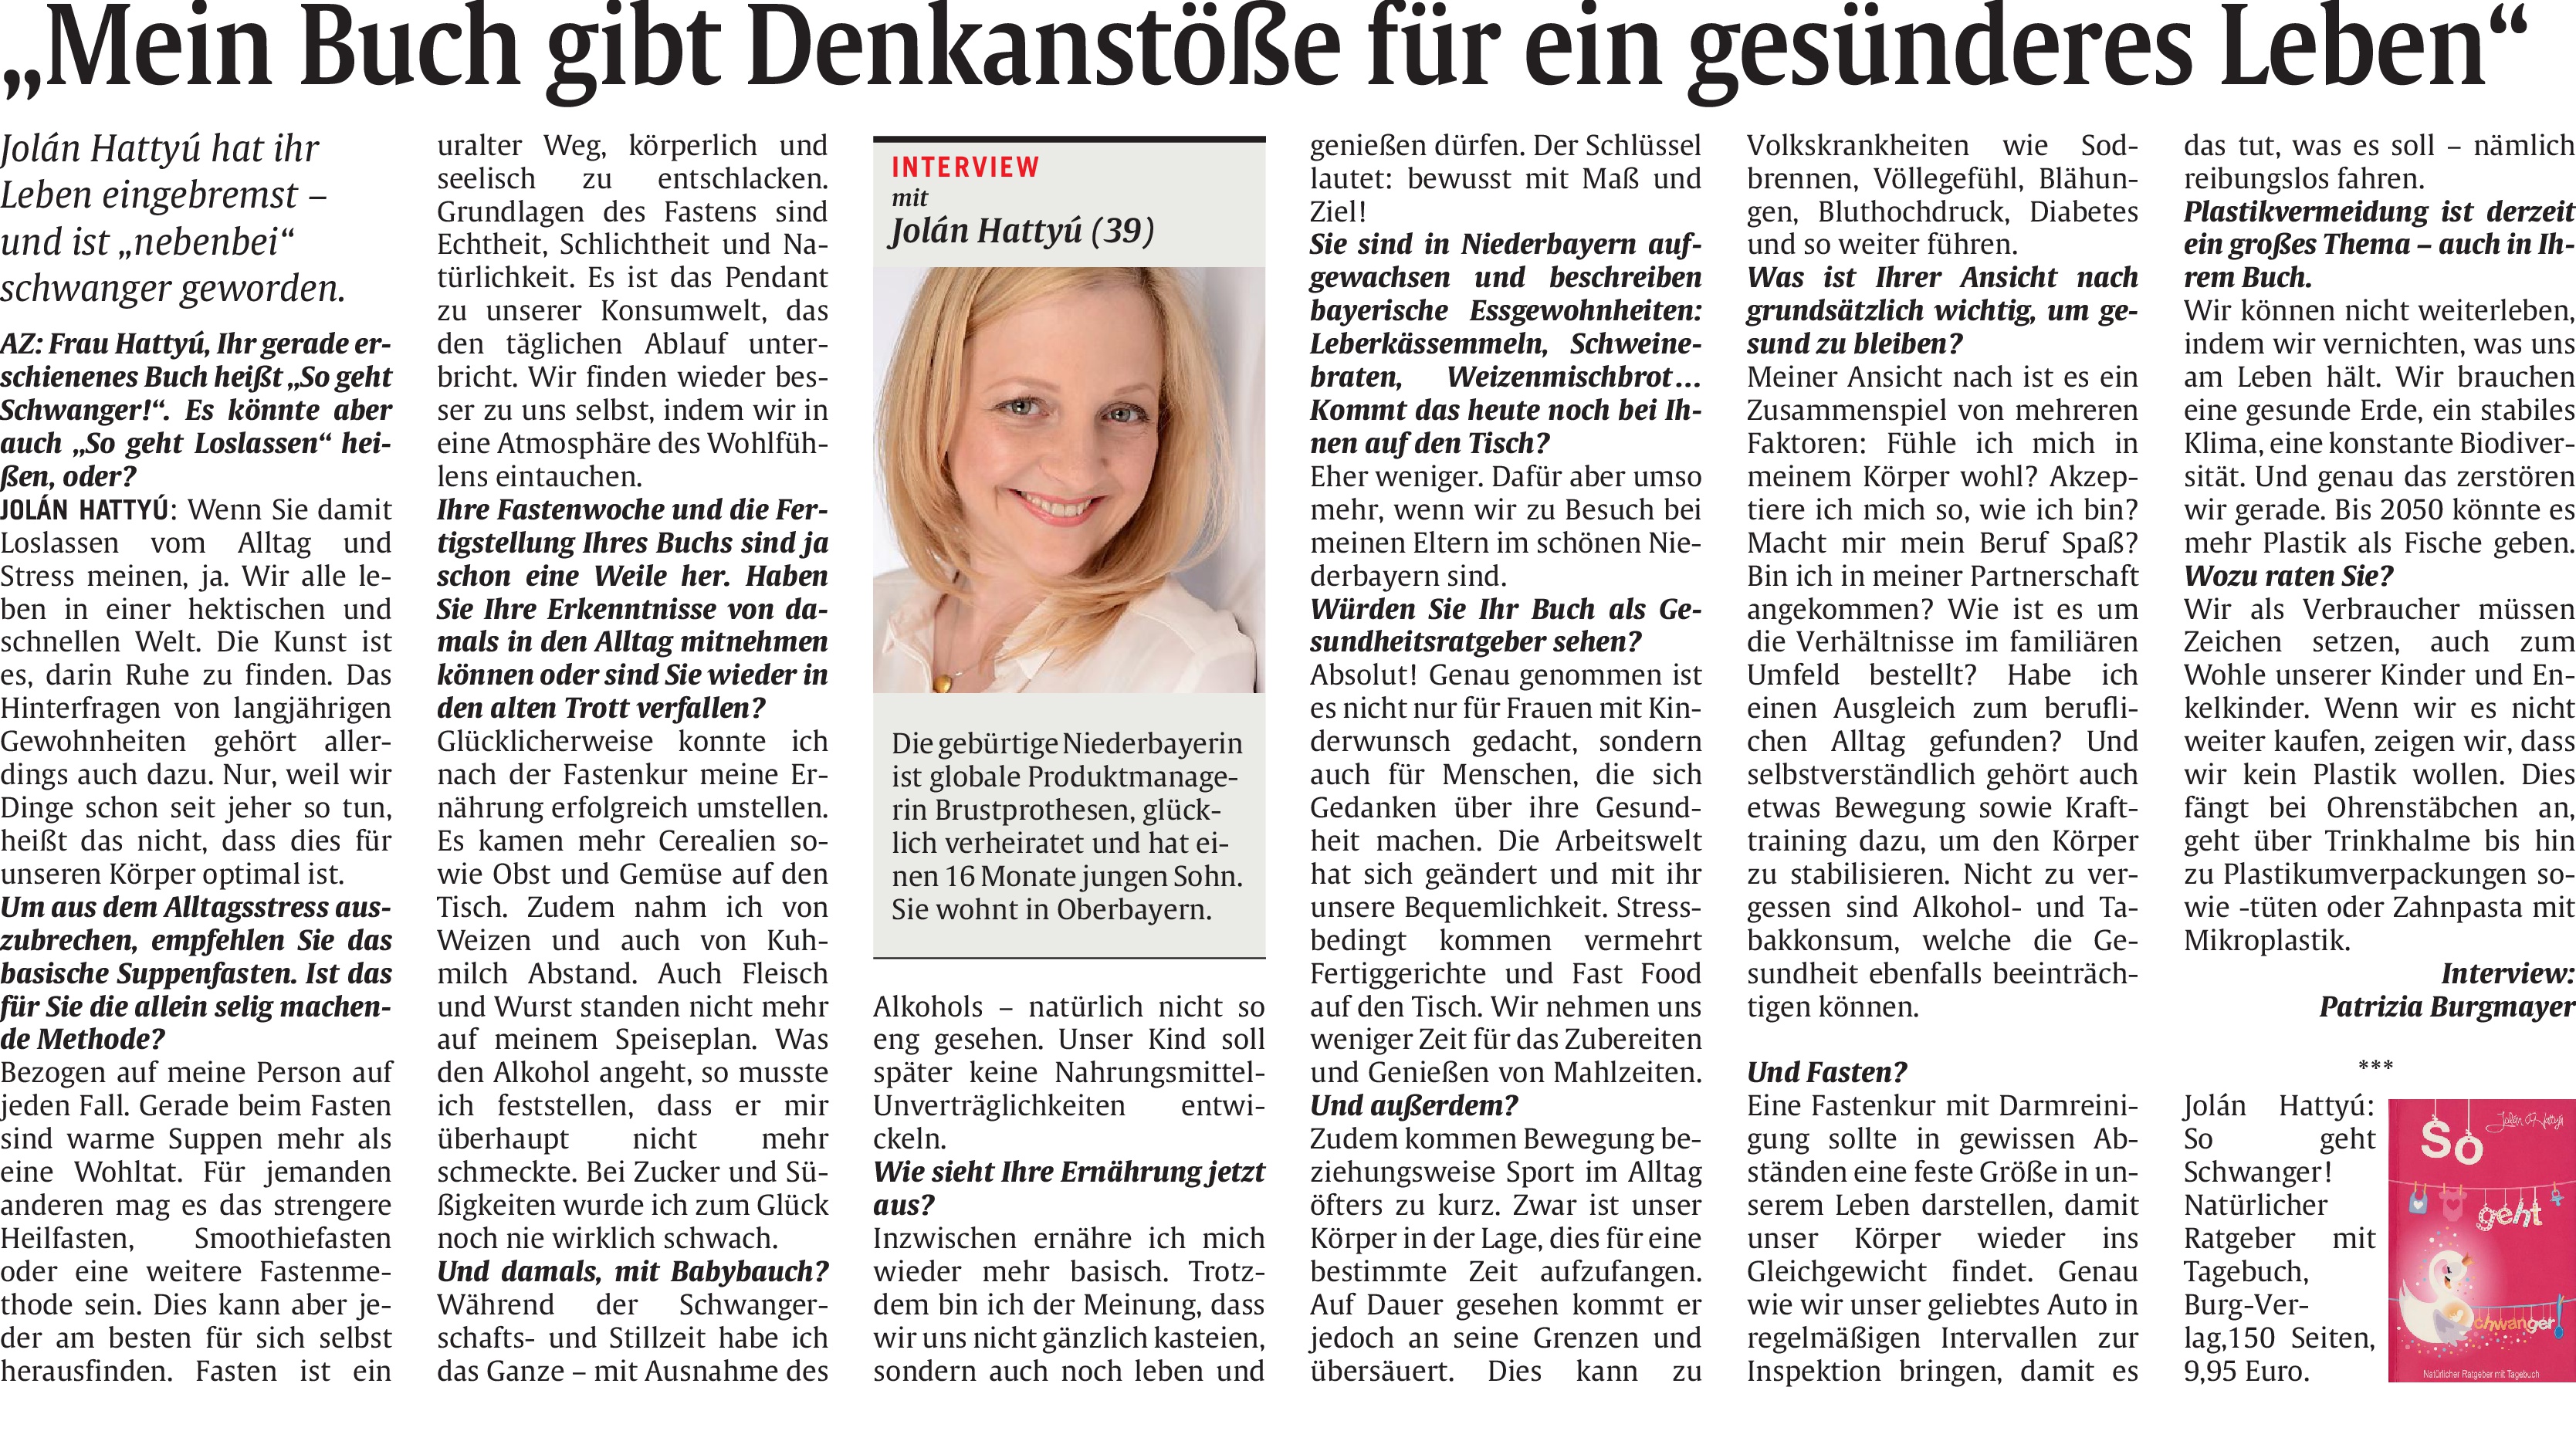 Interview_Münchner_Abendzeitung